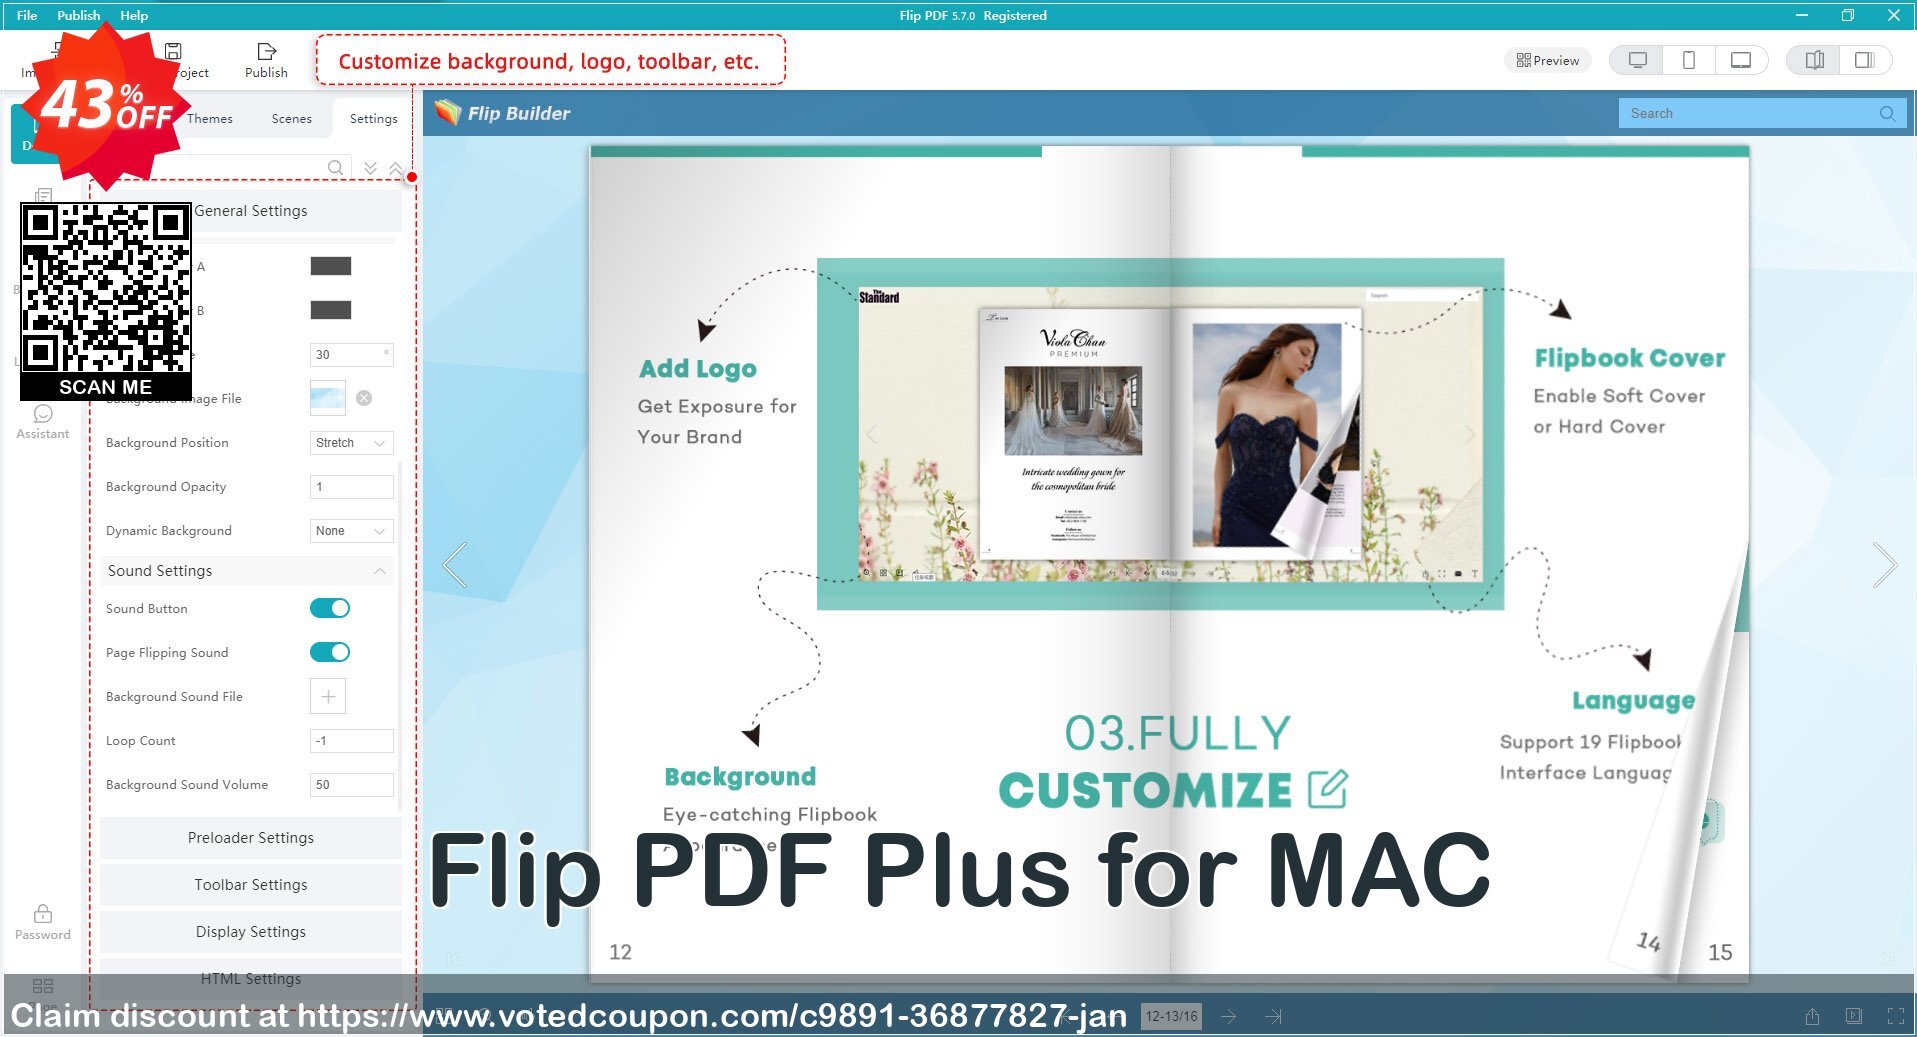 Flip PDF Plus for MAC Coupon, discount 43% OFF Flip PDF Plus for MAC, verified. Promotion: Wonderful discounts code of Flip PDF Plus for MAC, tested & approved